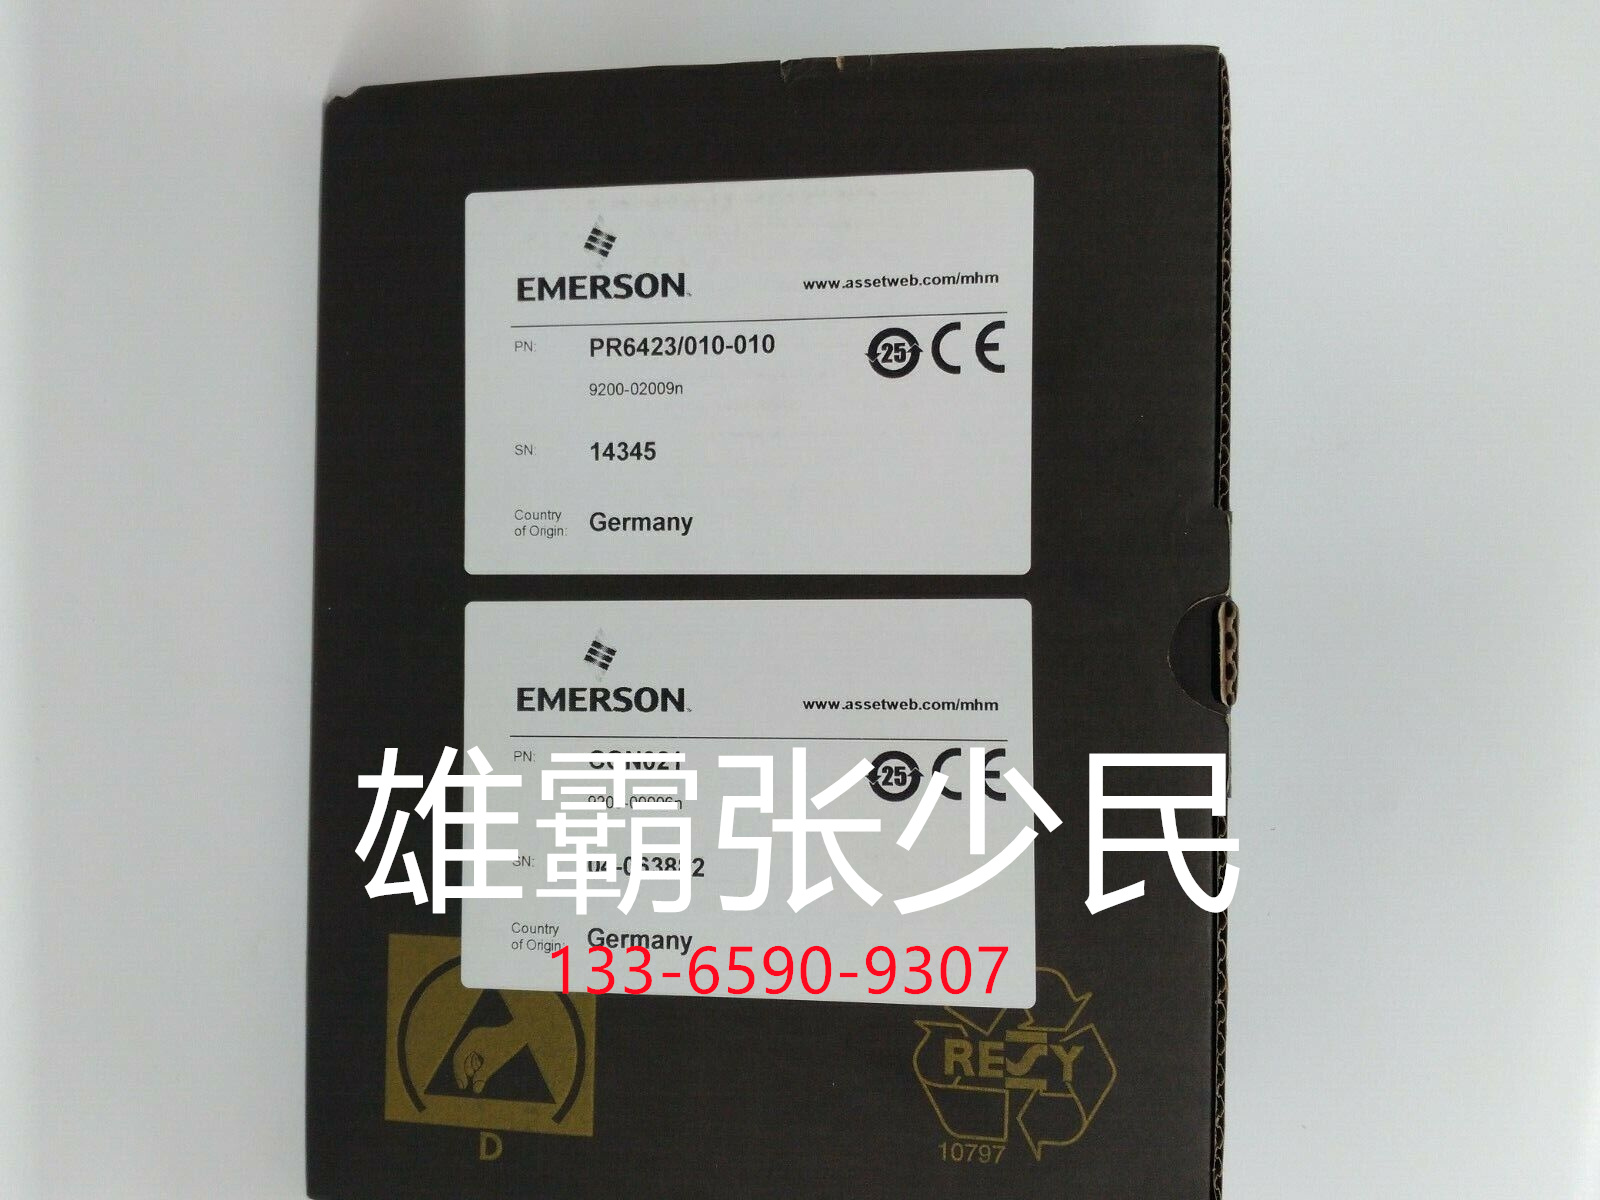 EMERSON EPRO 前置传感器带探头 库存现货CON021/916-200+PR6426/010-140 